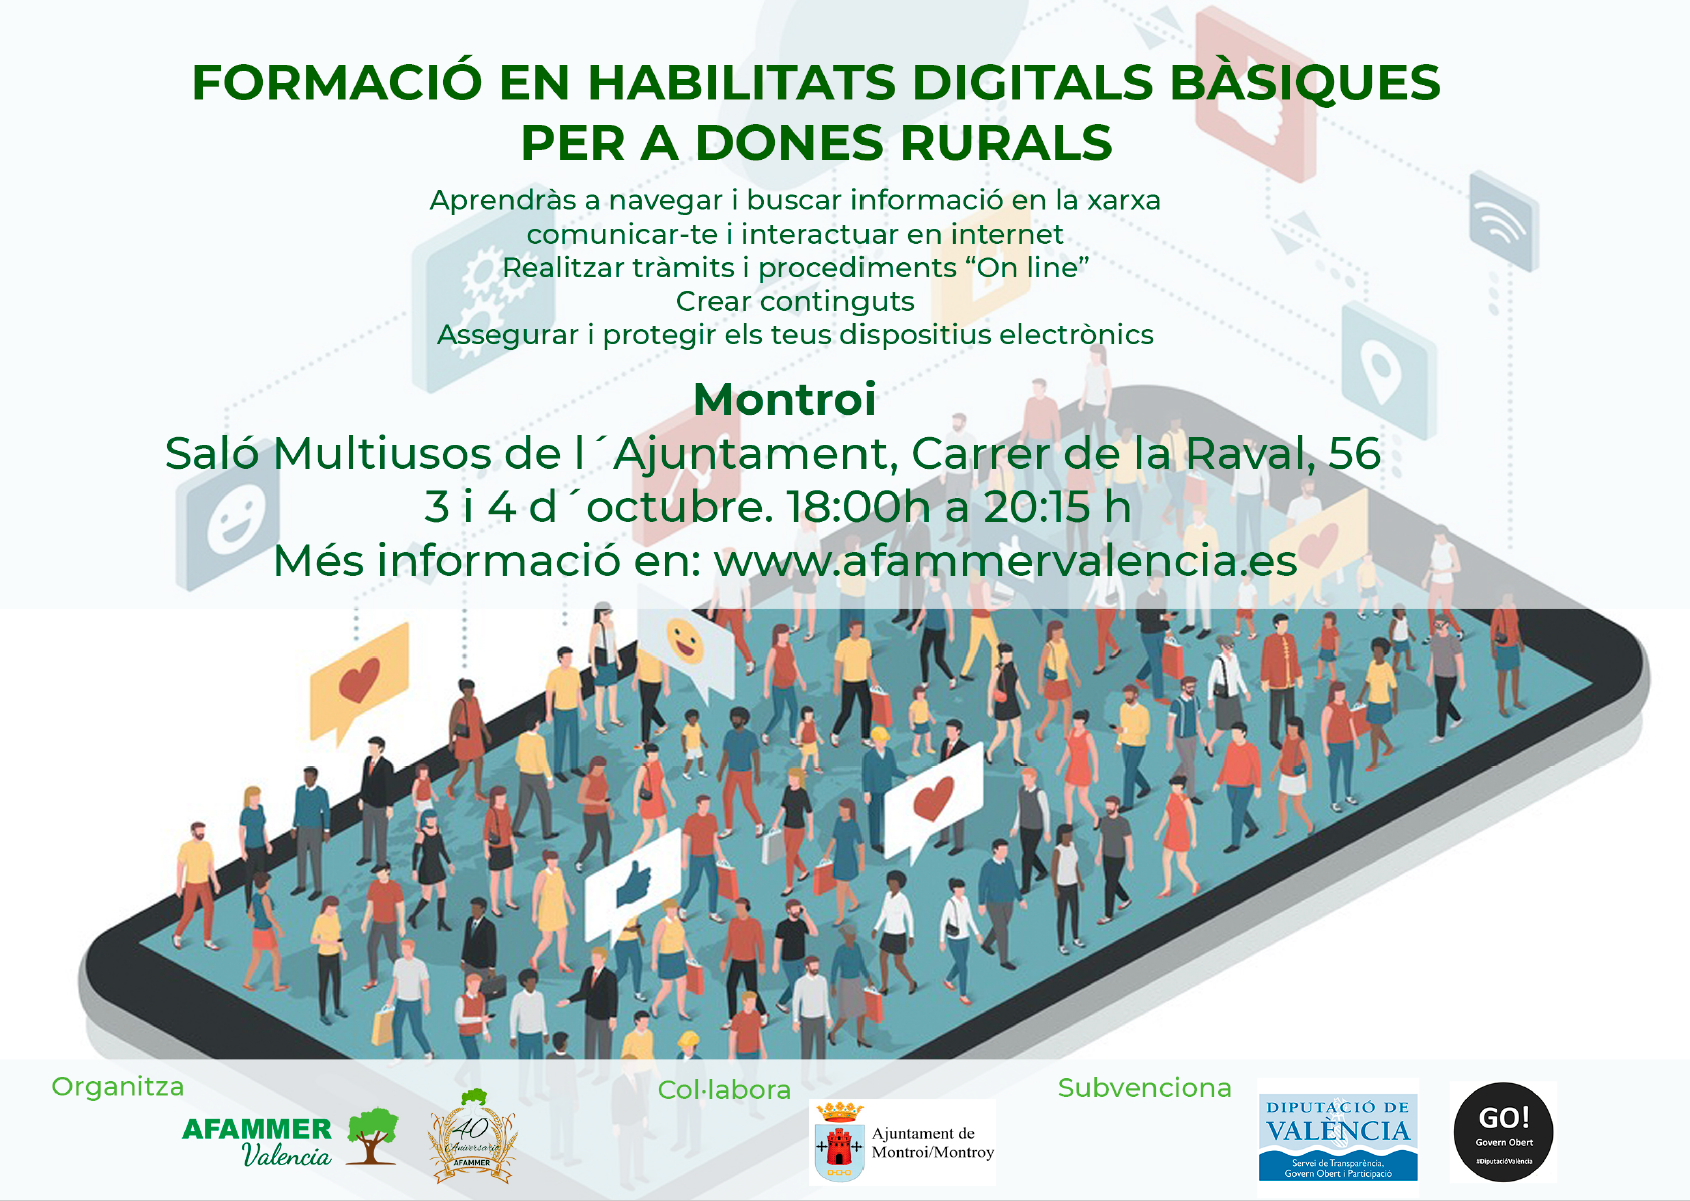 Afammer Valencia organiza su curso sobre habilidades digitales básicas en Montroi